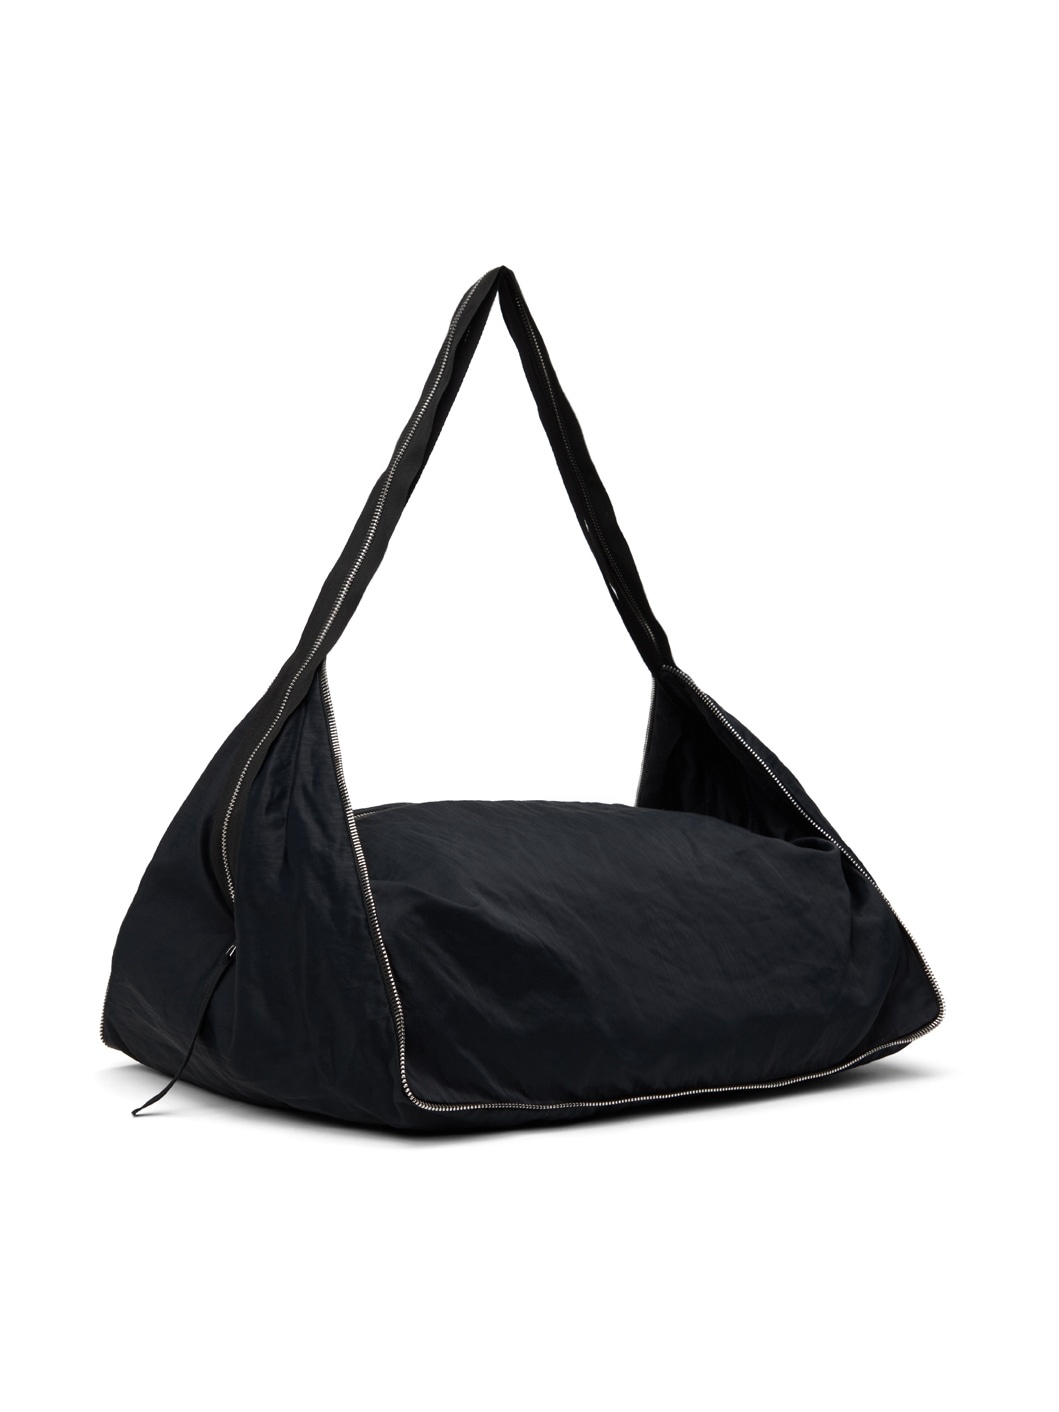 Black Cailleach Bag - 2